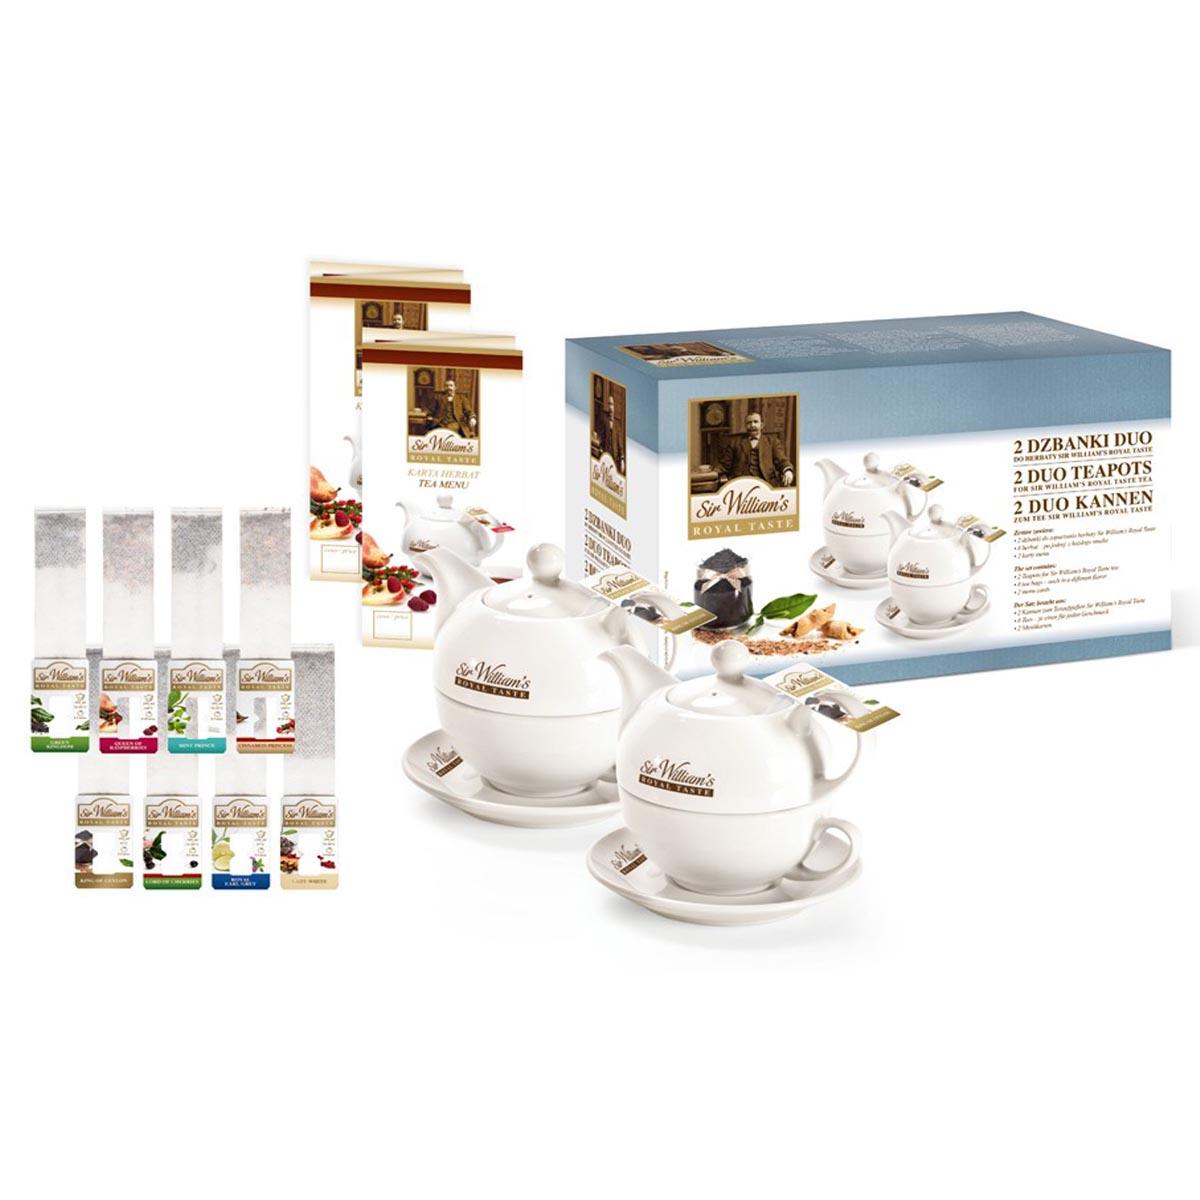 con un juego de muestras Sir Williams Royal Taste Teeservice bolsa de té de cualquier gusto, 8 unidades Elegante juego de tetera con taza de té - Set de regalo 